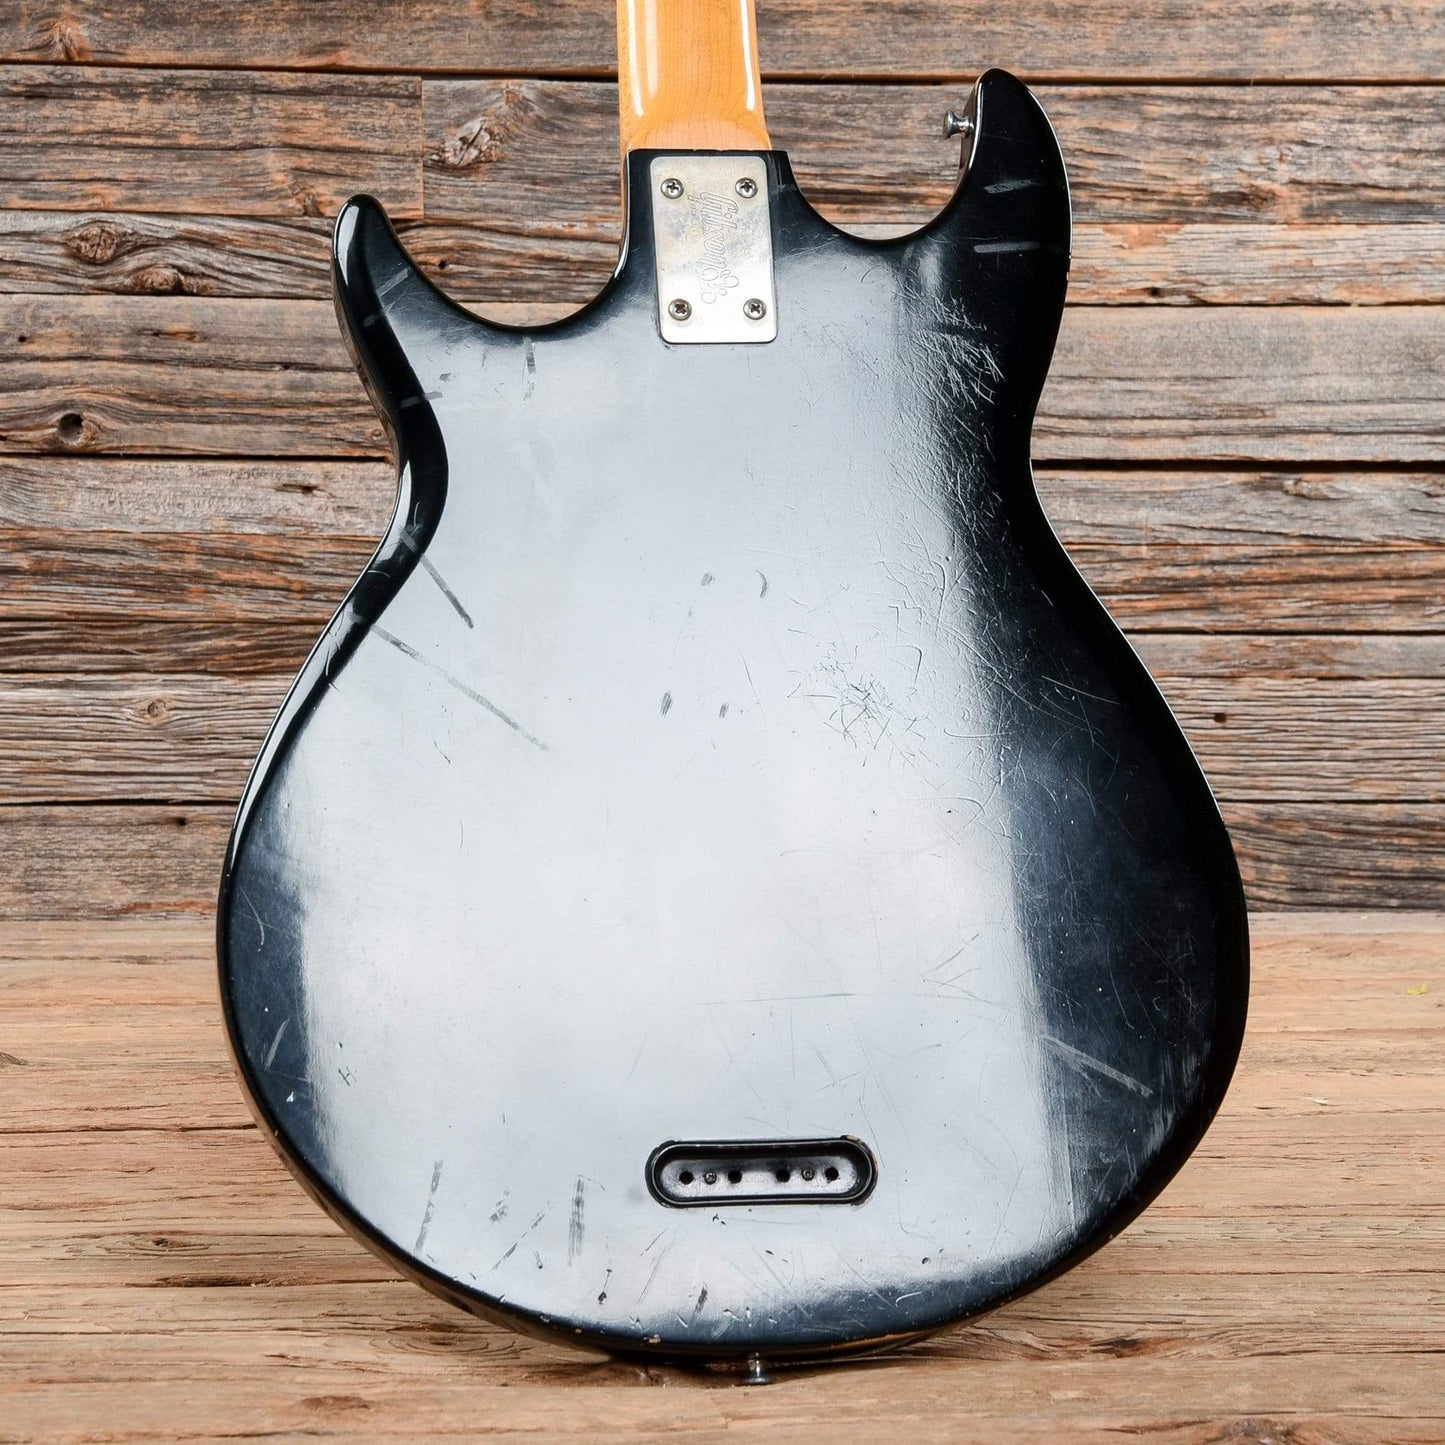 Gibson Grabber Black 1979 Bass Guitars / 4-String